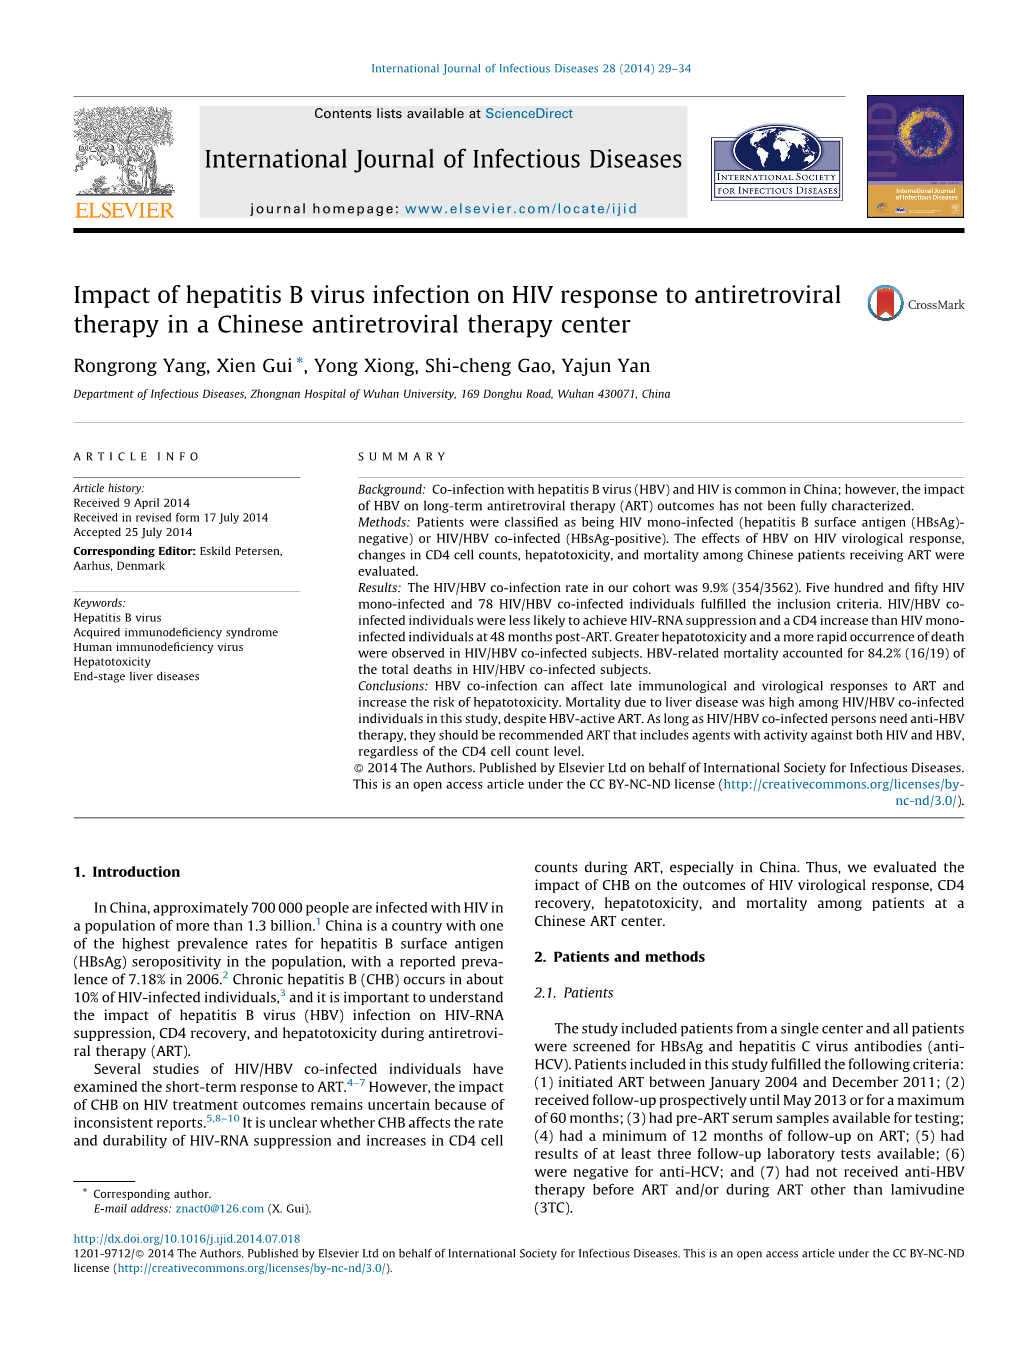 Impact of Hepatitis B Virus Infection on HIV Response to Antiretroviral